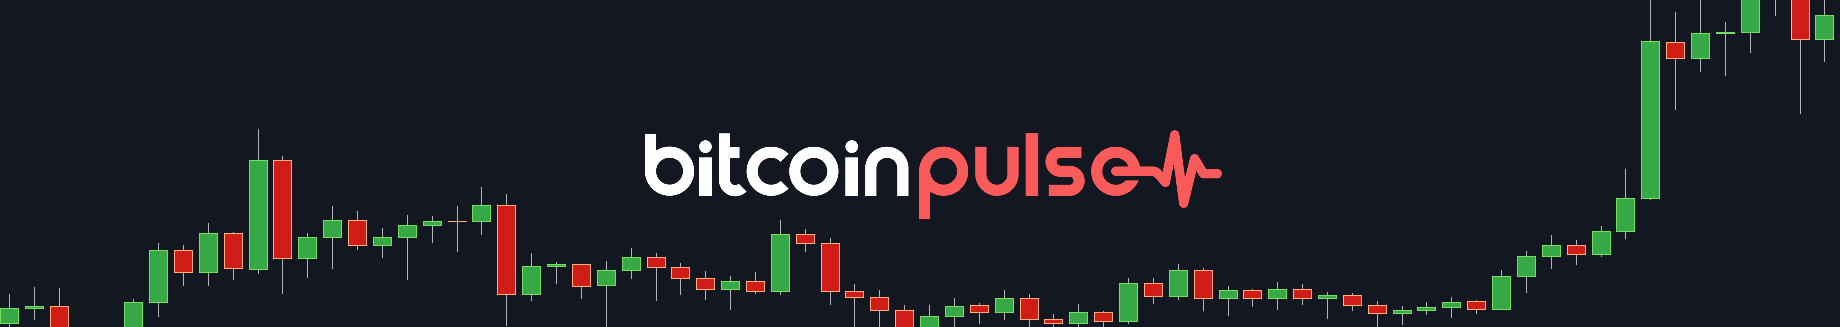 Bitcoin Pulse #122